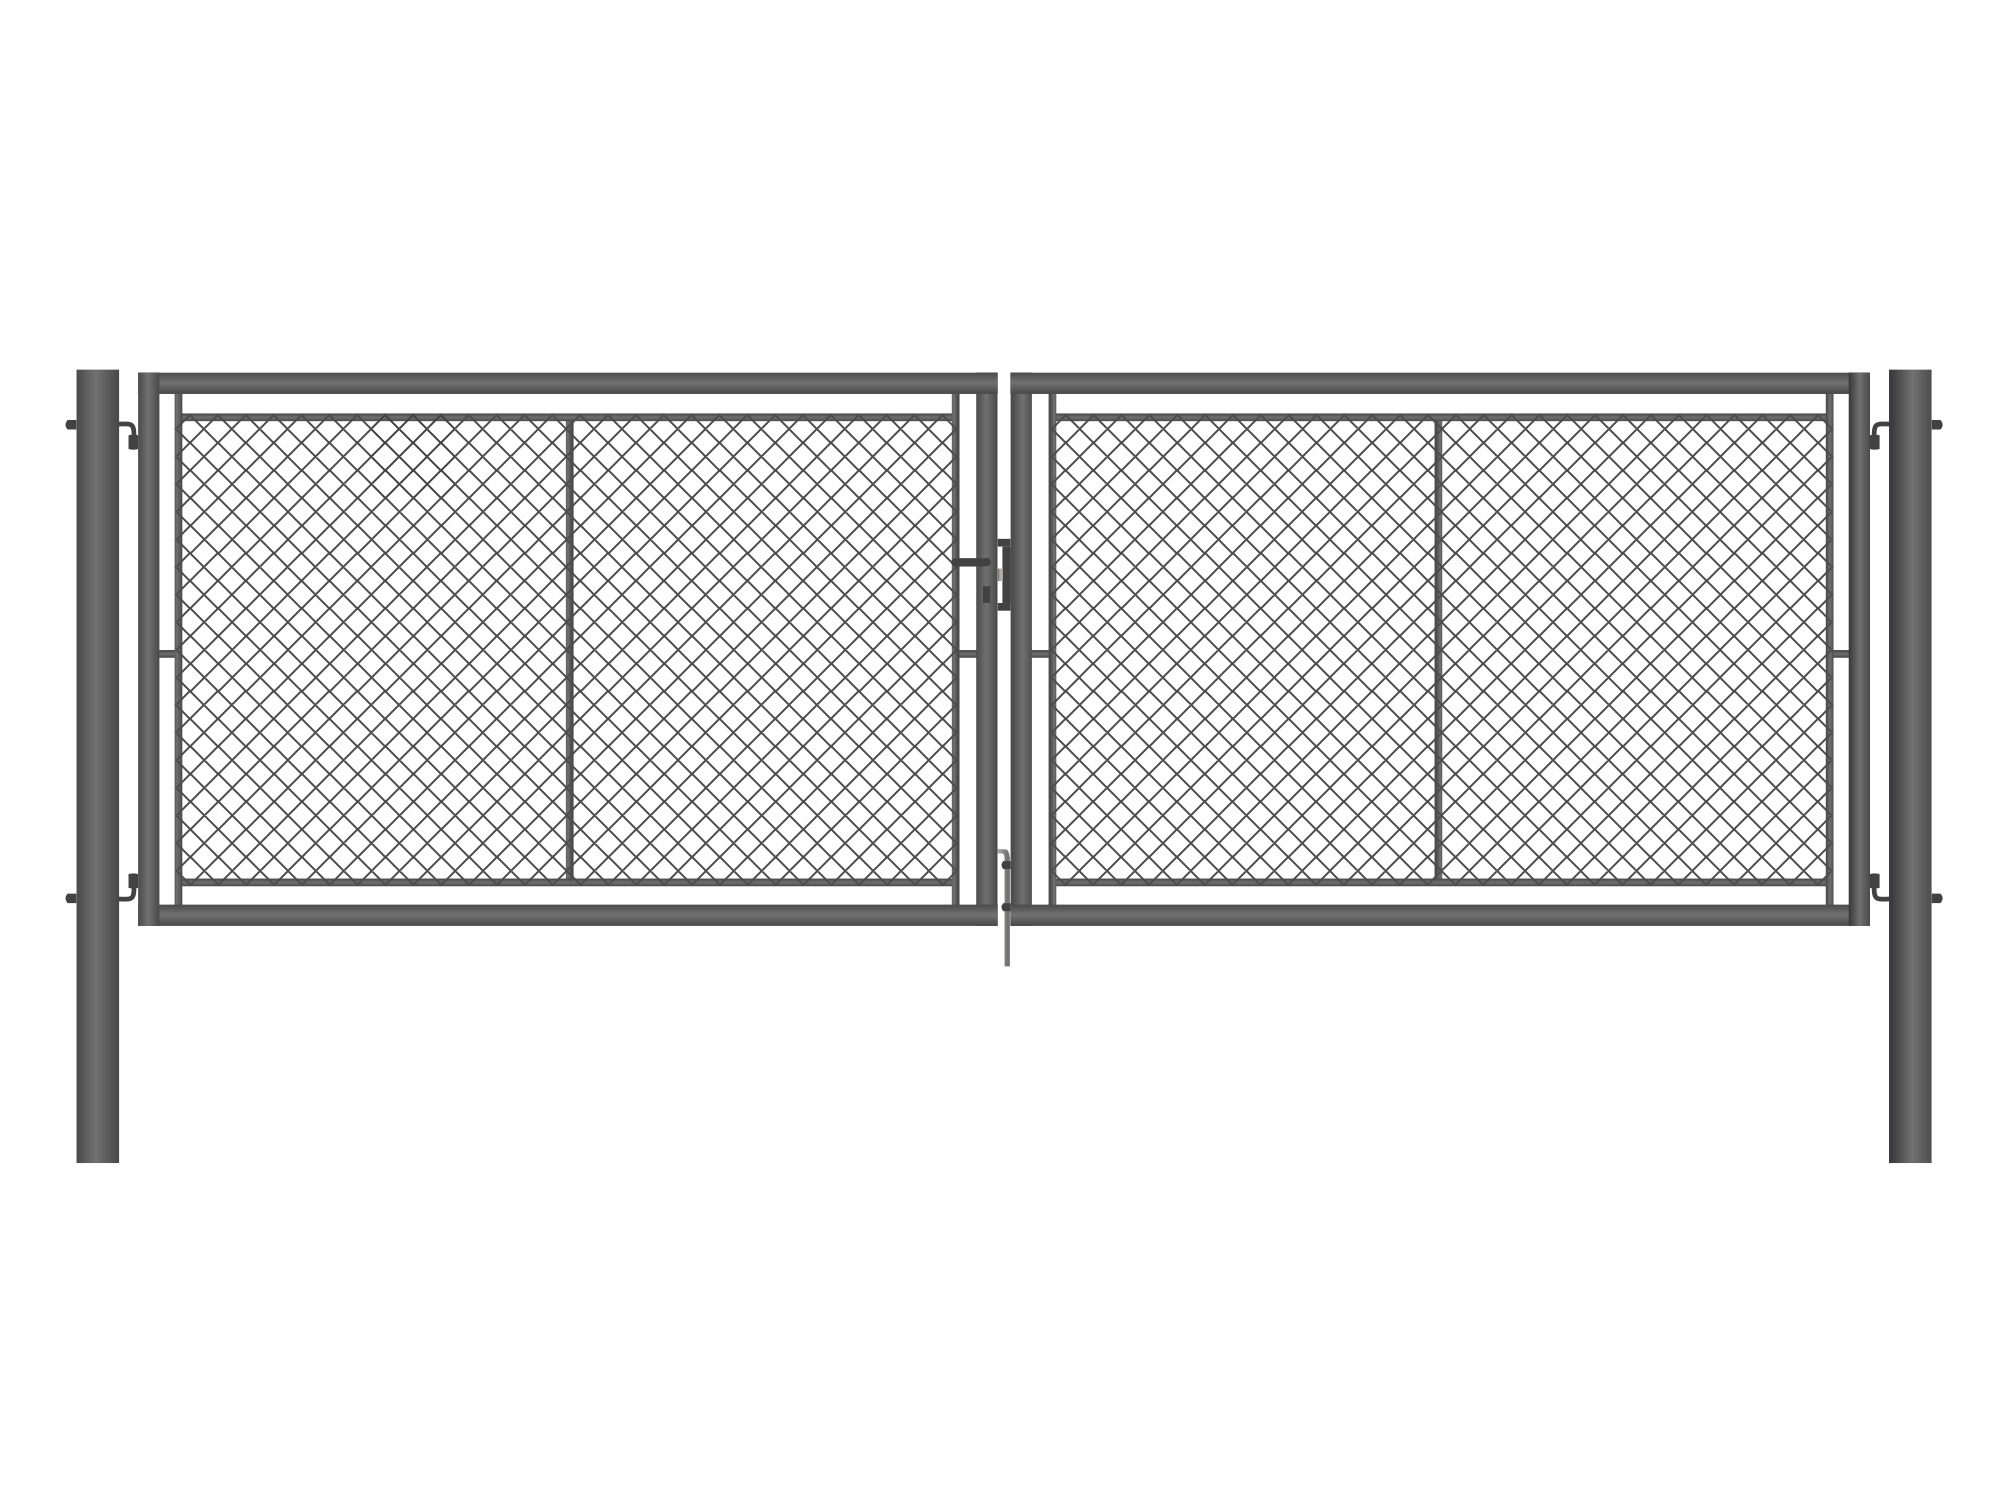 Brána zahradní dvoukřídlá antracit, výška 100 x 400 cm, FAB, s výplní klasického pletiva